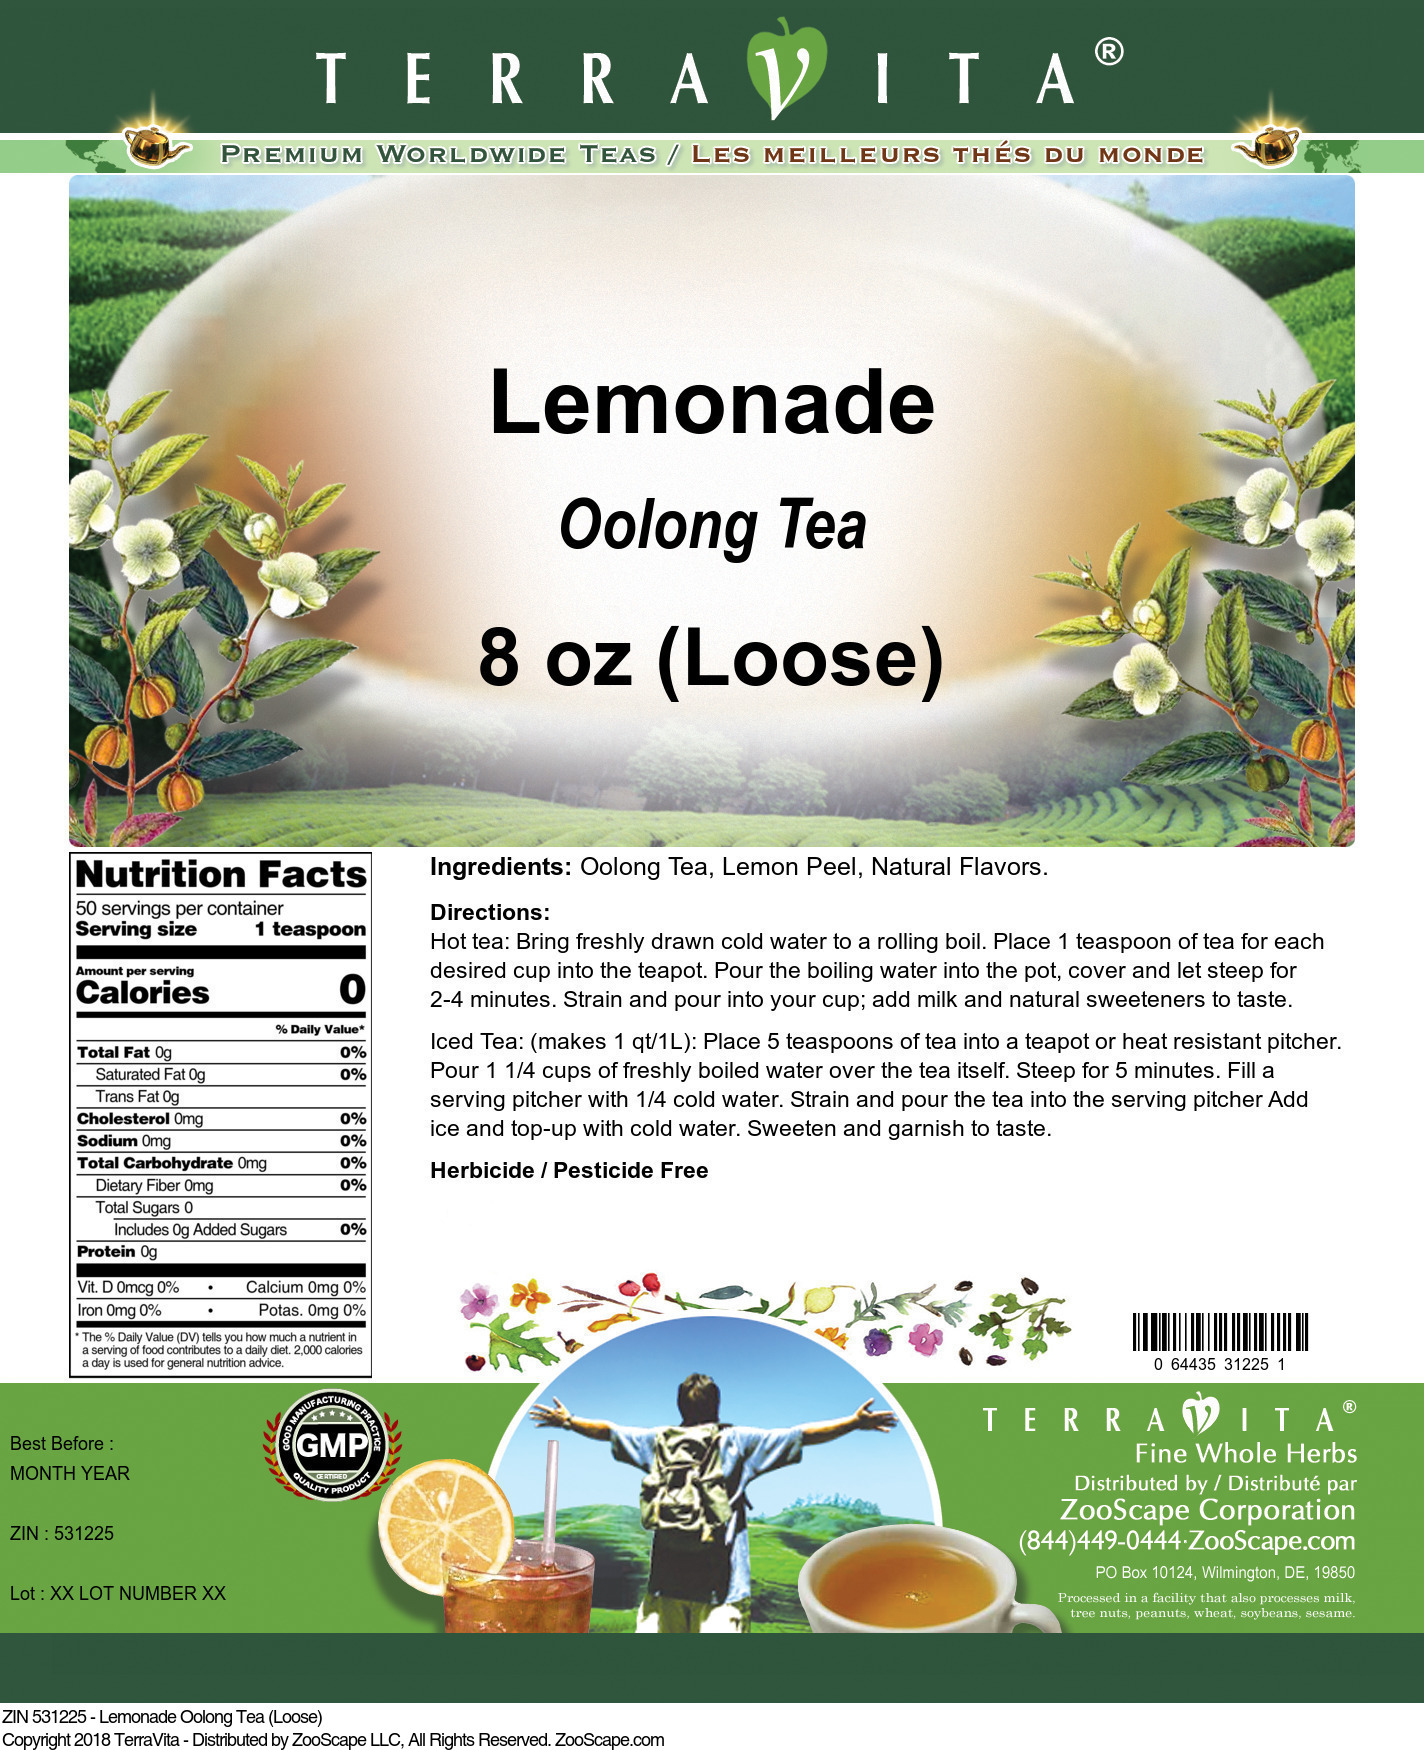 Lemonade Oolong Tea (Loose) - Label